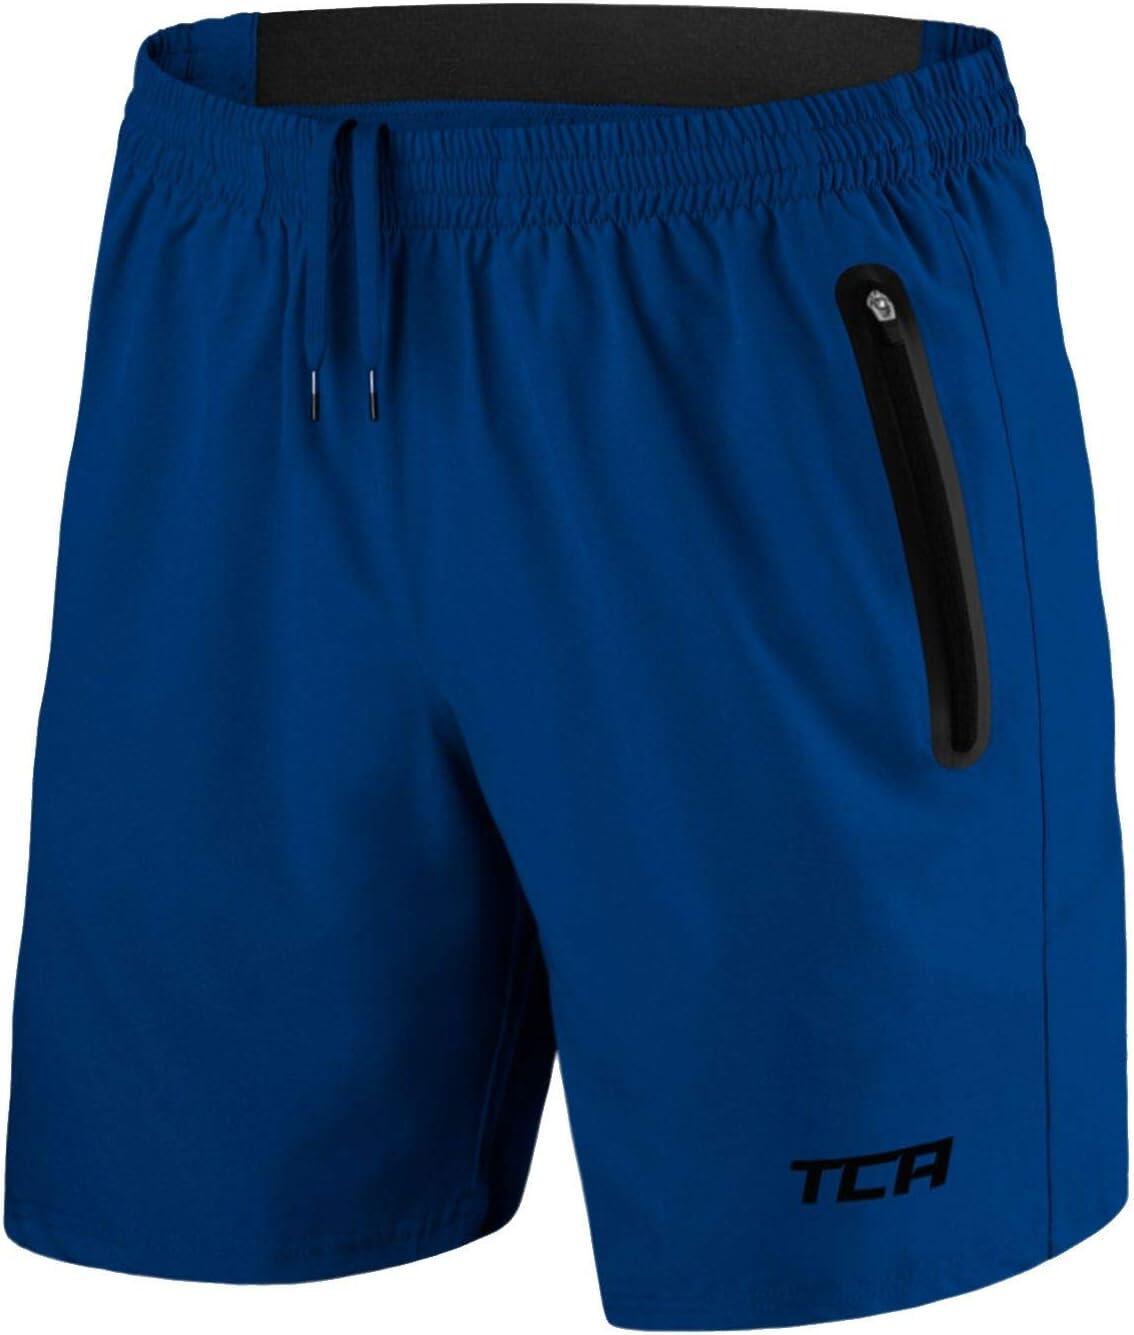 TCA Men's Elite Tech Lightweight Running Shorts with Zip Pockets - Mazarine Blue